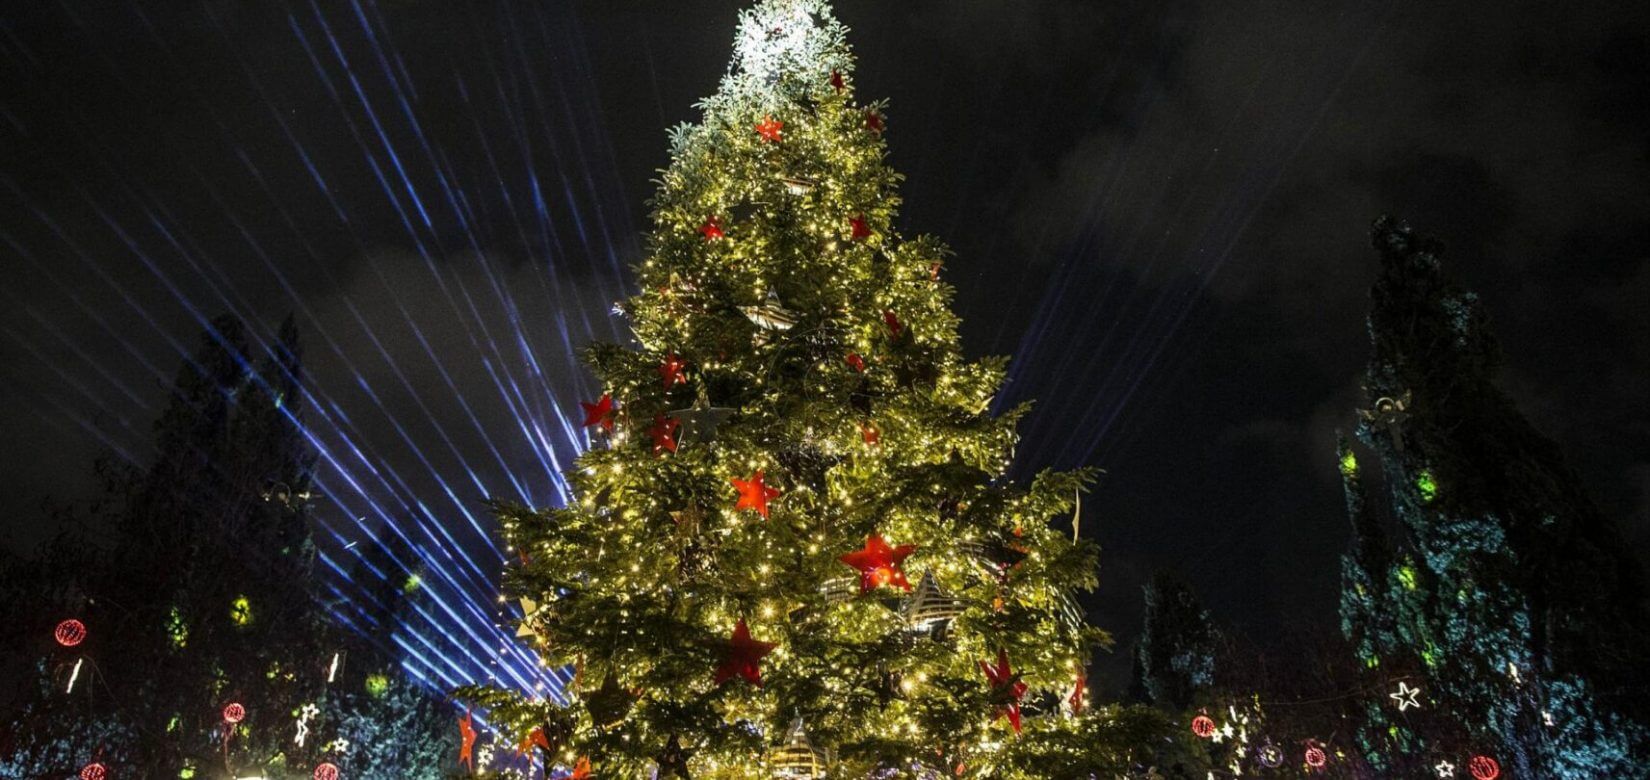 10 μαγικά (και δωρεάν) πράγματα που μπορείτε να κάνετε για παραμυθένια Χριστούγεννα στην Αθήνα